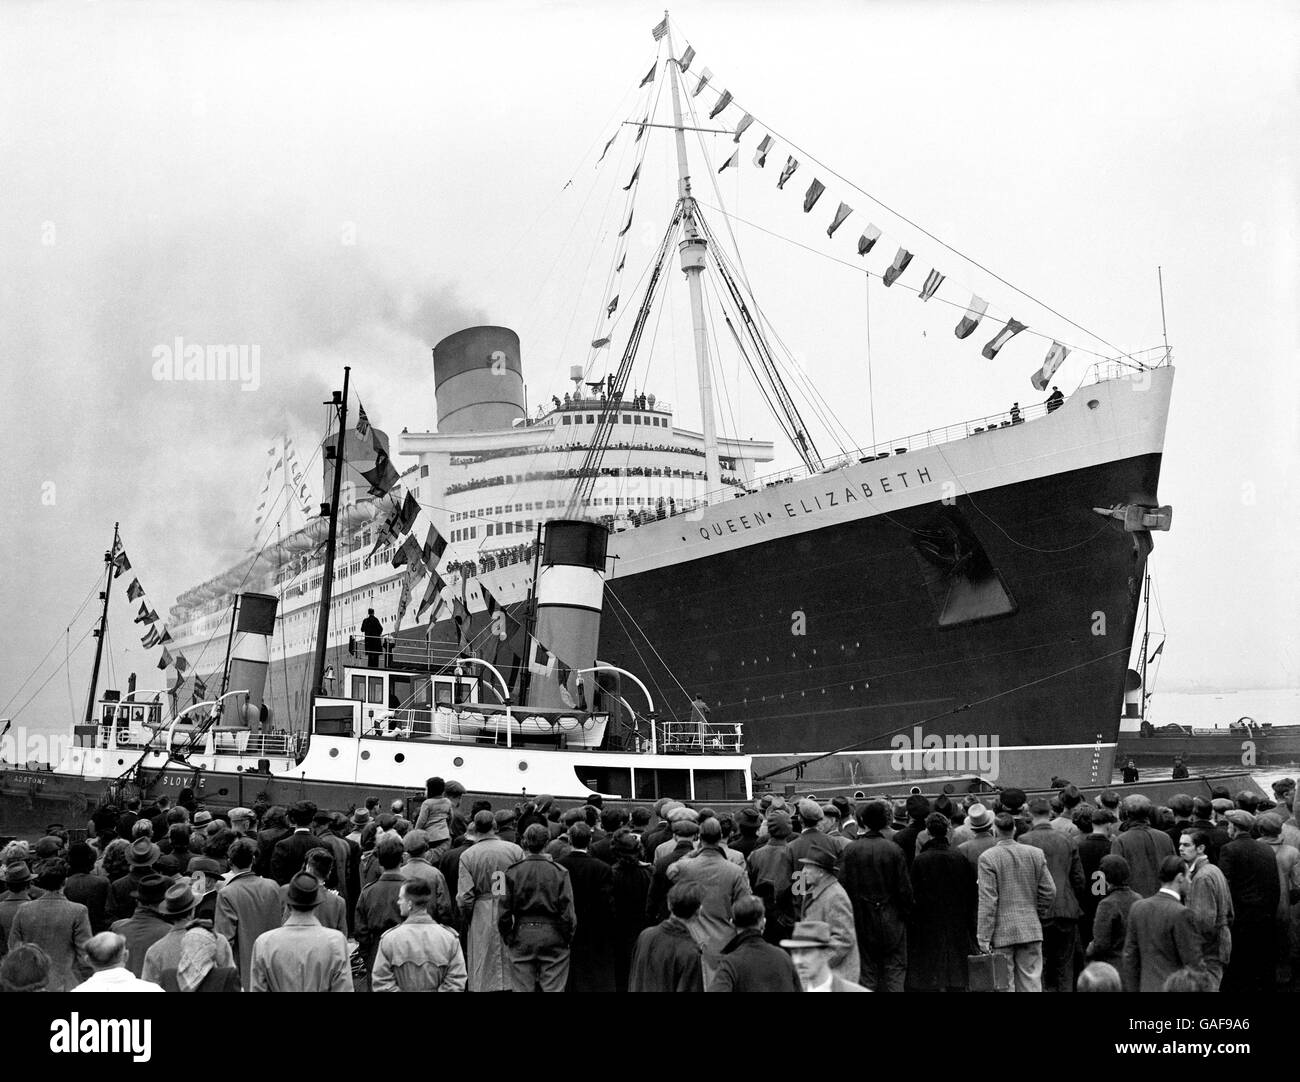 Genau um zwei Uhr fuhr die 83,000 Tonnen schwere Cunard-White Star Liner 'Queen Elizabeth' von ihren Anlegeplätzen in Southampton ab und rutschte langsam aus ihrem Liegeplatz, um ihre Jungfernfahrt nach New York zu beginnen. Stockfoto